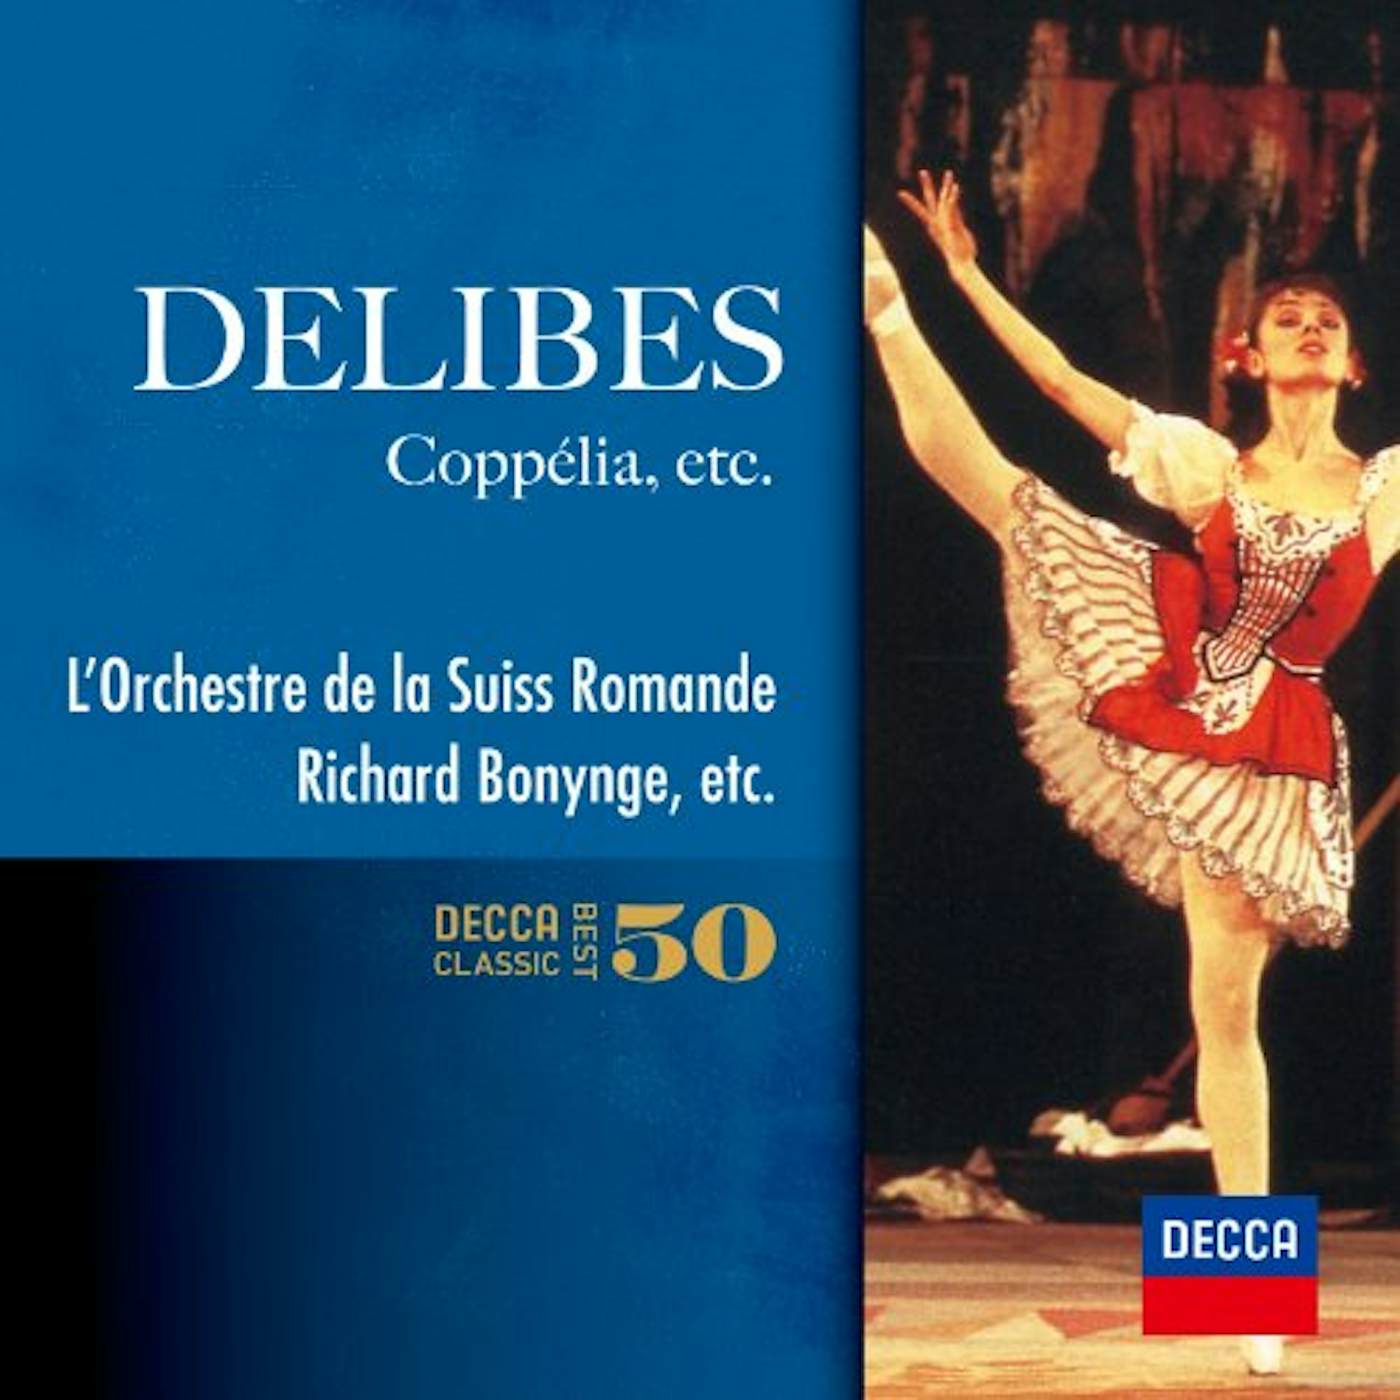 Richard Bonynge DELIBES: COPPELIA CD